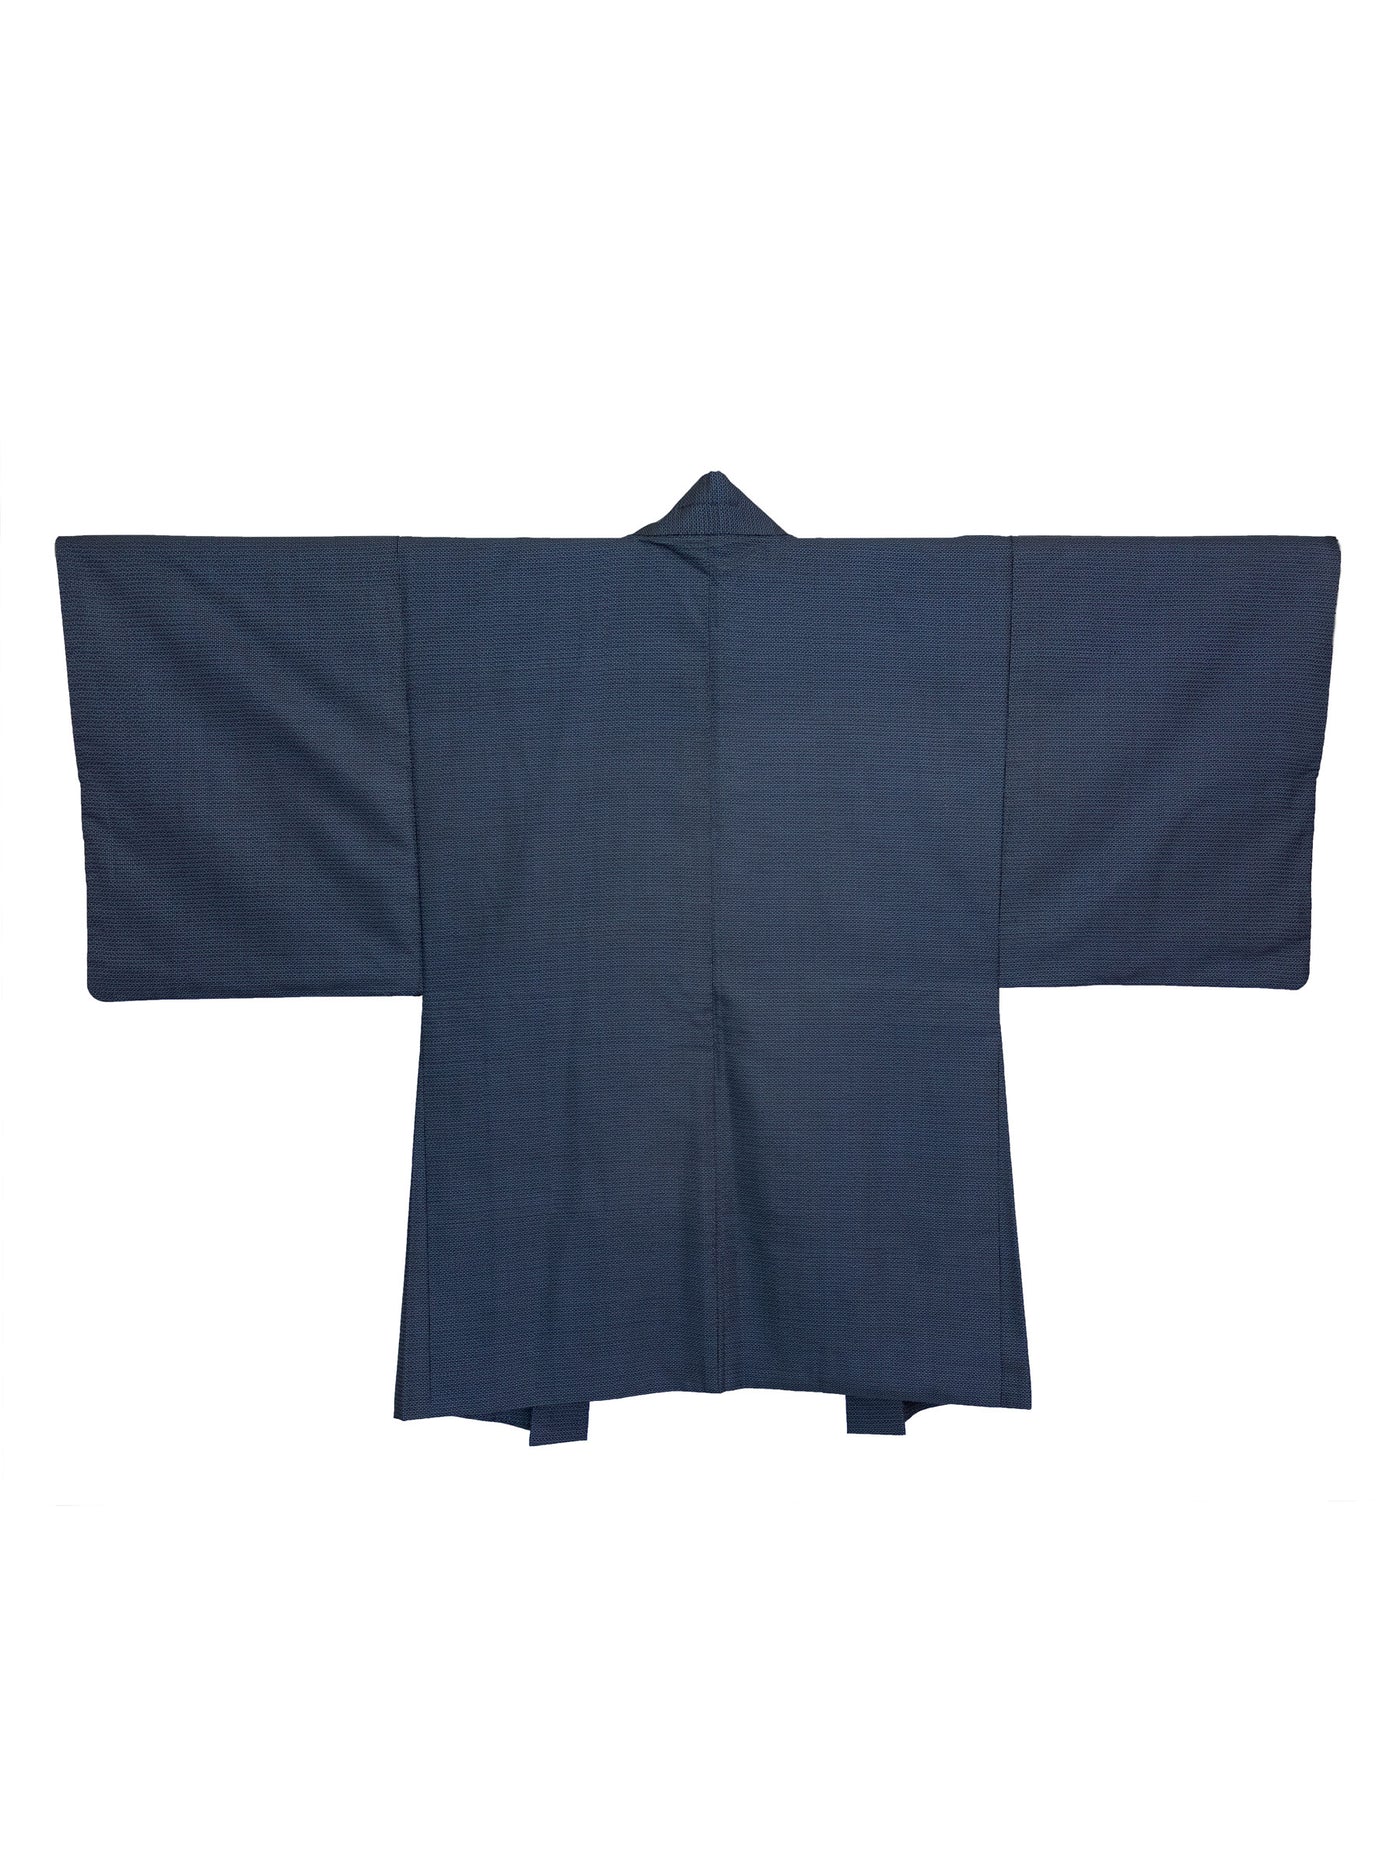 Vintage Kazoku Men's Haori Jacket